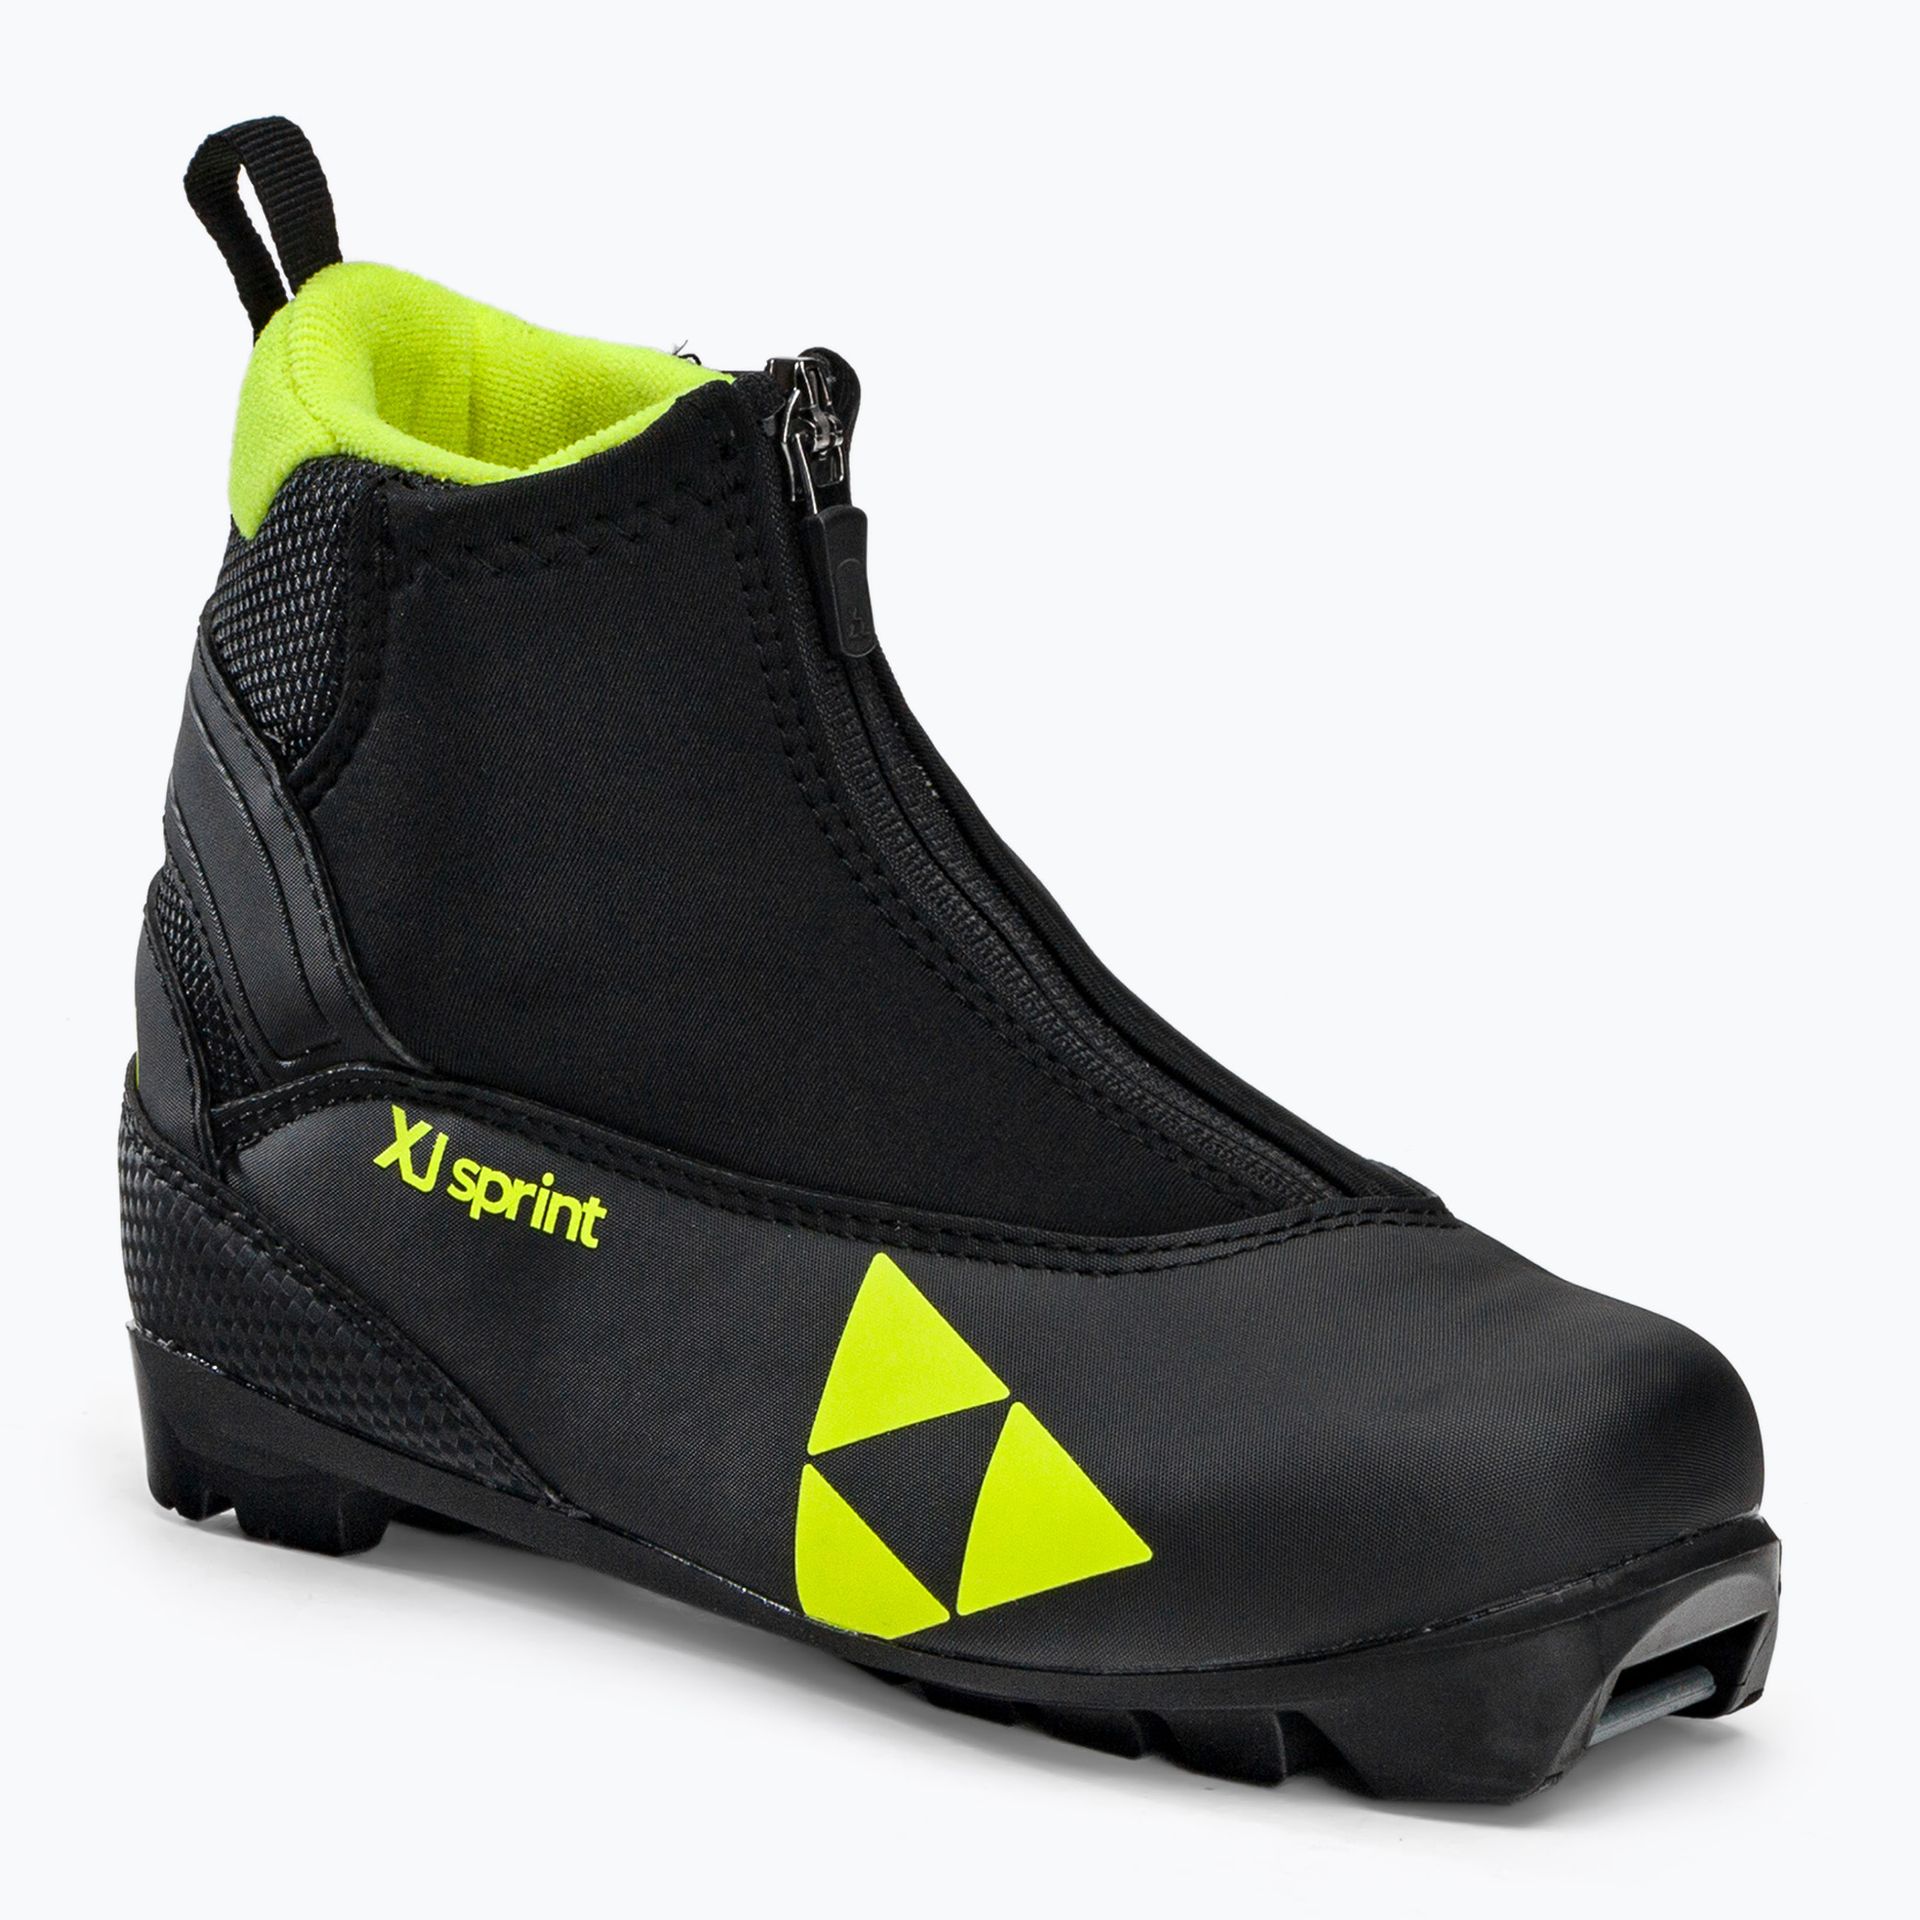 Buty narciarskie biegowe dziecięce Fischer XJ Sprint czarno-żółte S40821,31  32 eu